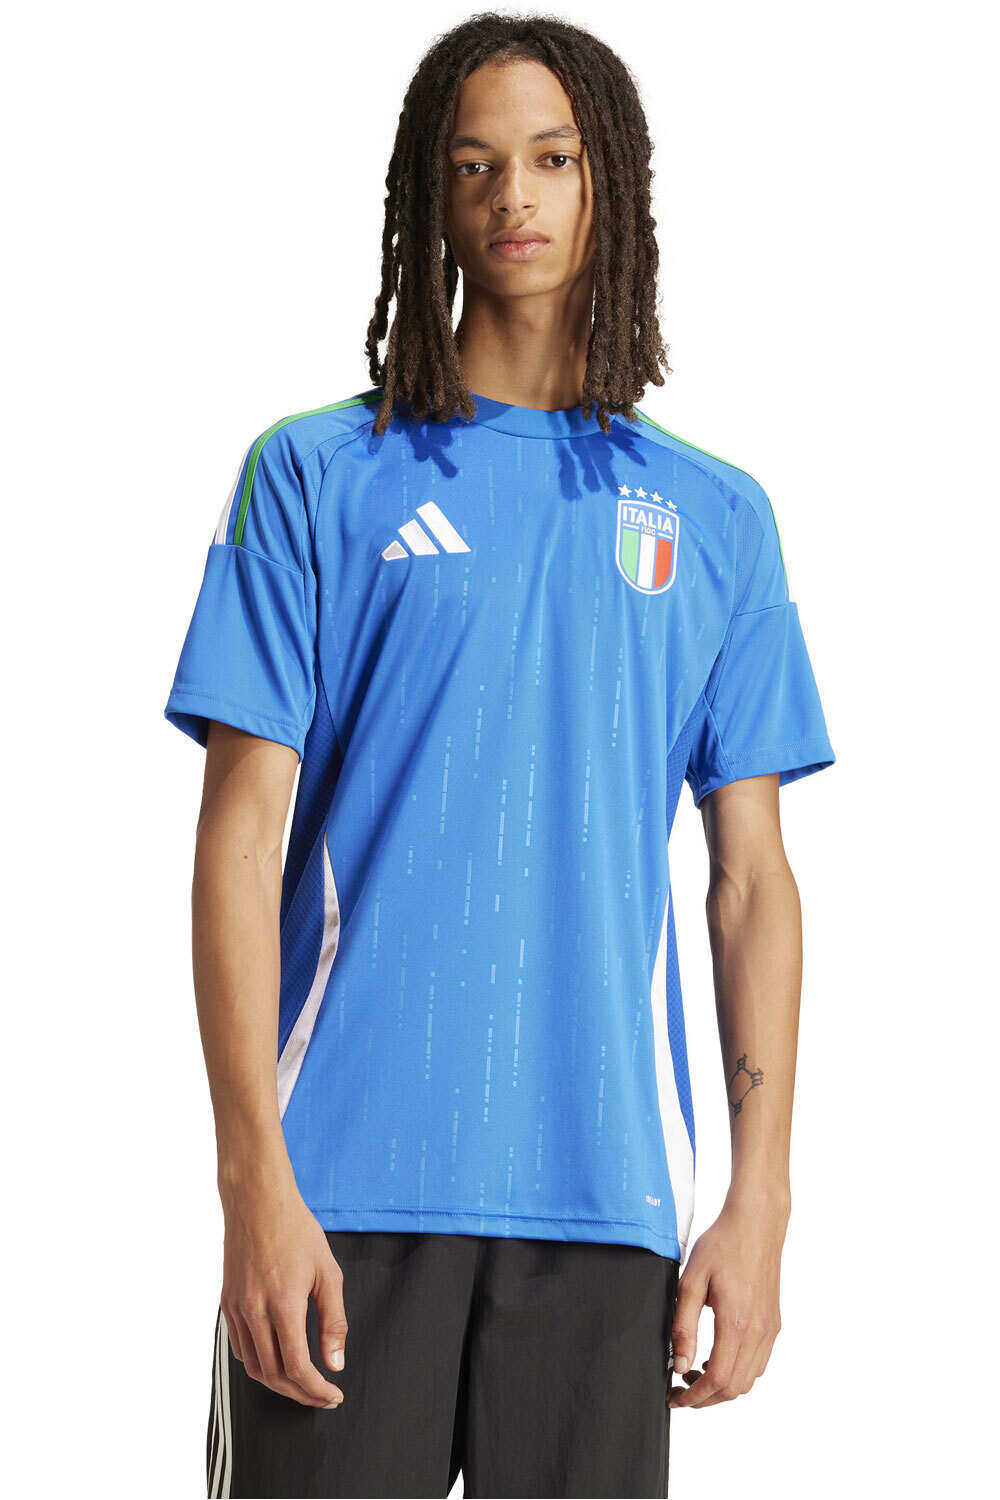 adidas camiseta de fútbol oficiales ITALIA 24 H JSY vista frontal